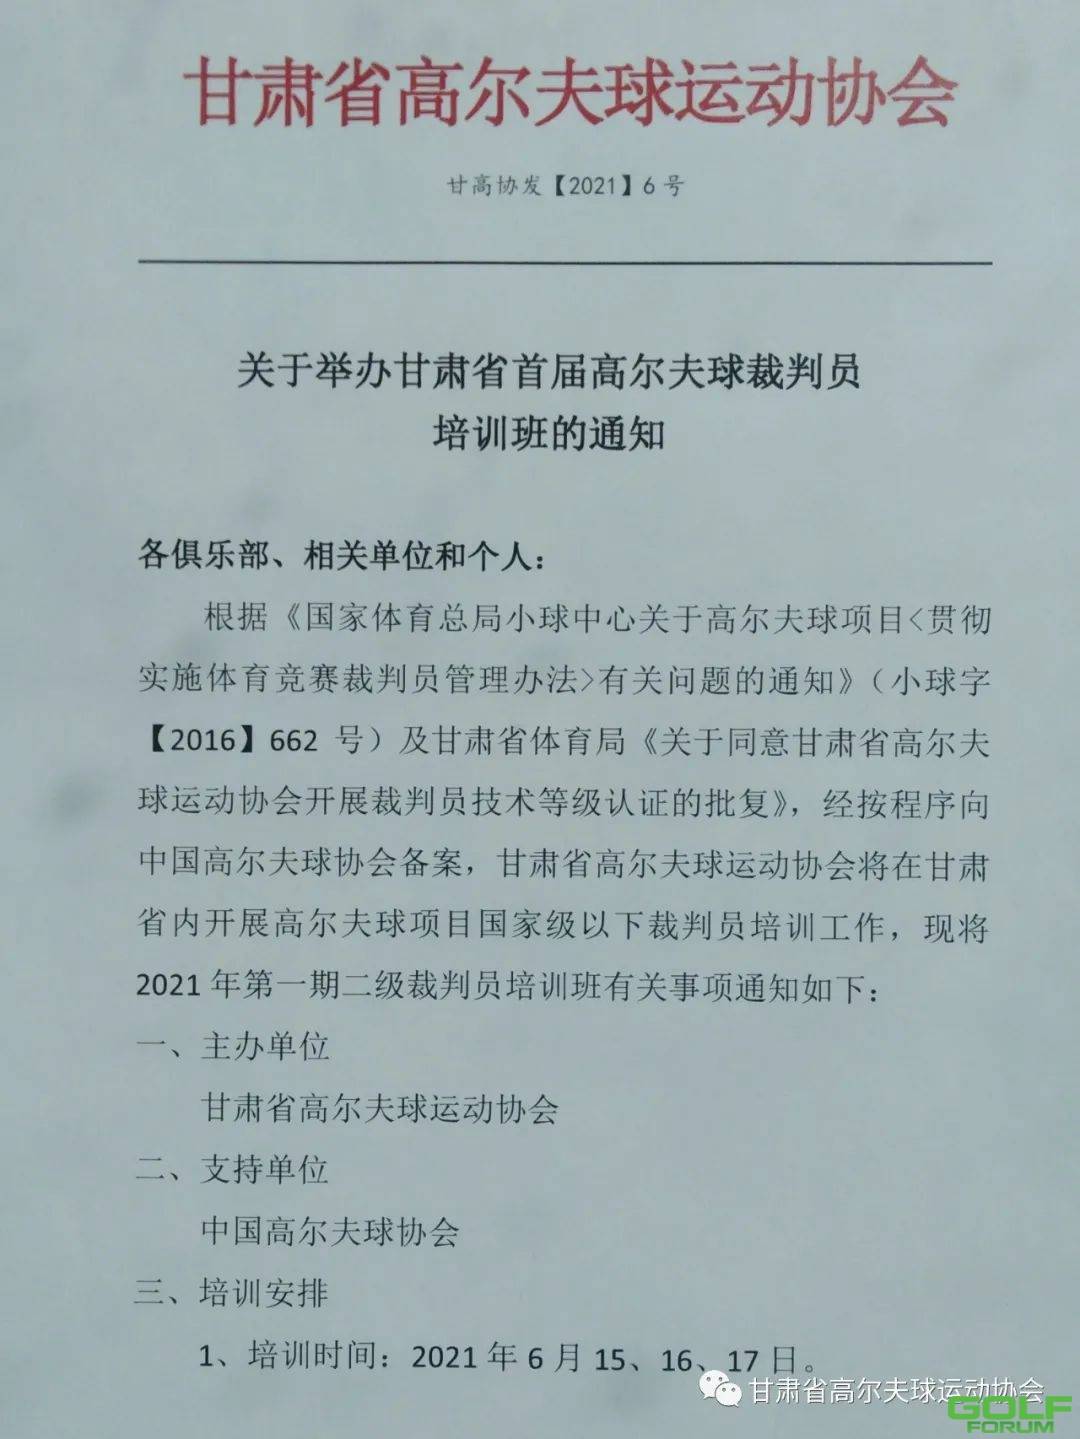 关于举办甘肃省首届高尔夫球裁判员培训班的通知